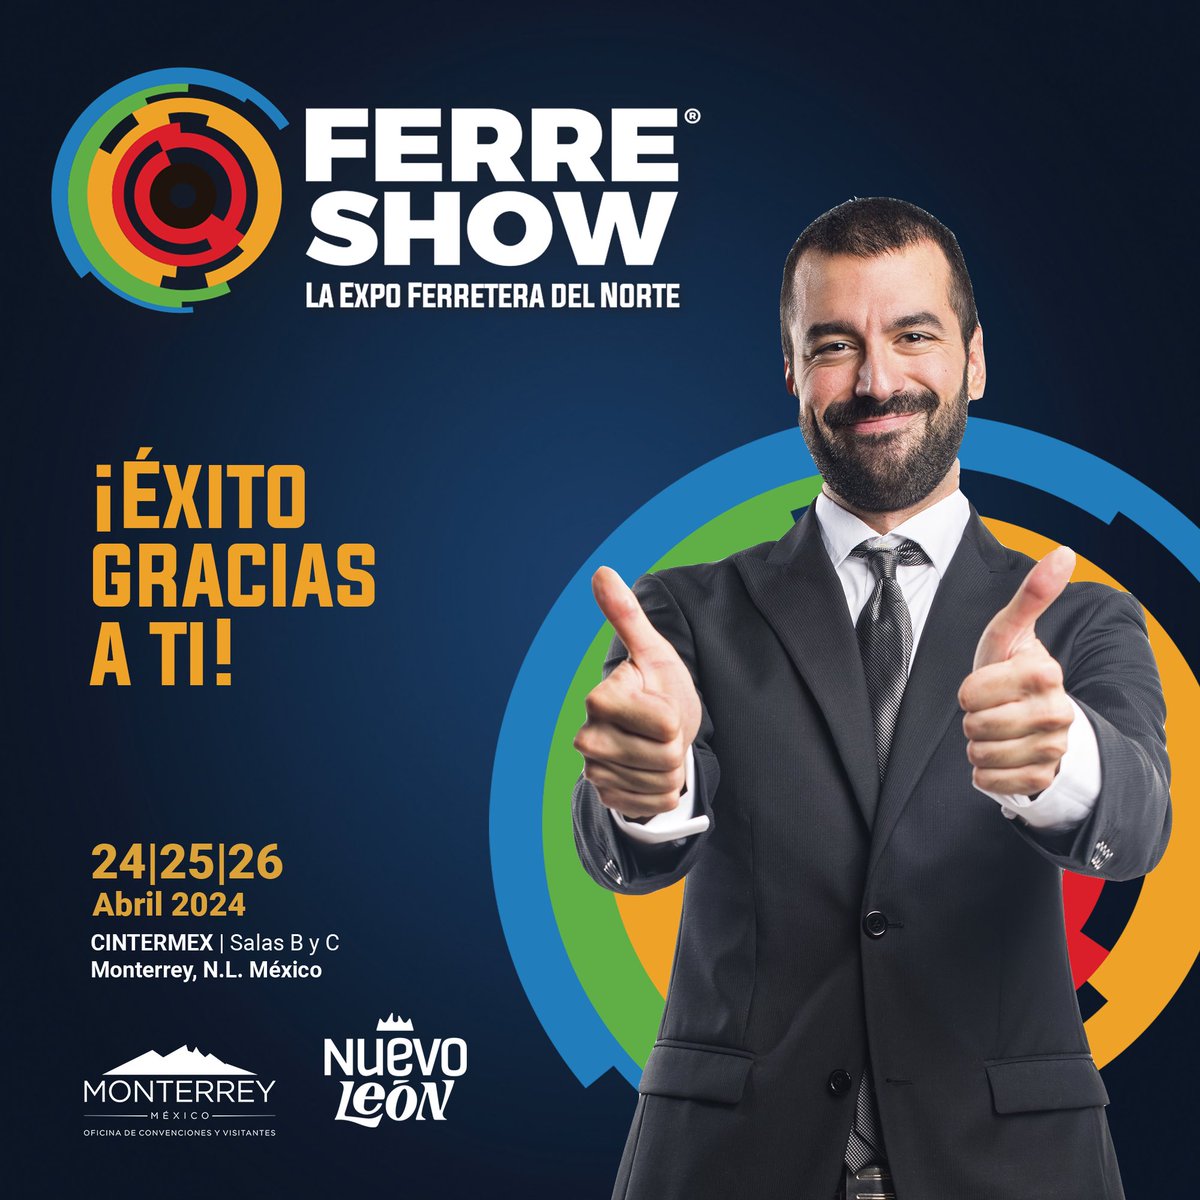 ¡Gracias por hacerlo posible! En FerreShow 2024, la pasión y el compromiso de nuestros expositores y visitantes se hicieron evidentes en cada interacción, cada demostración y cada negociación. ¡Nos vemos en la próxima edición! #FerreShow2024 #ExpoFerreteraDelNorte #Monterrey